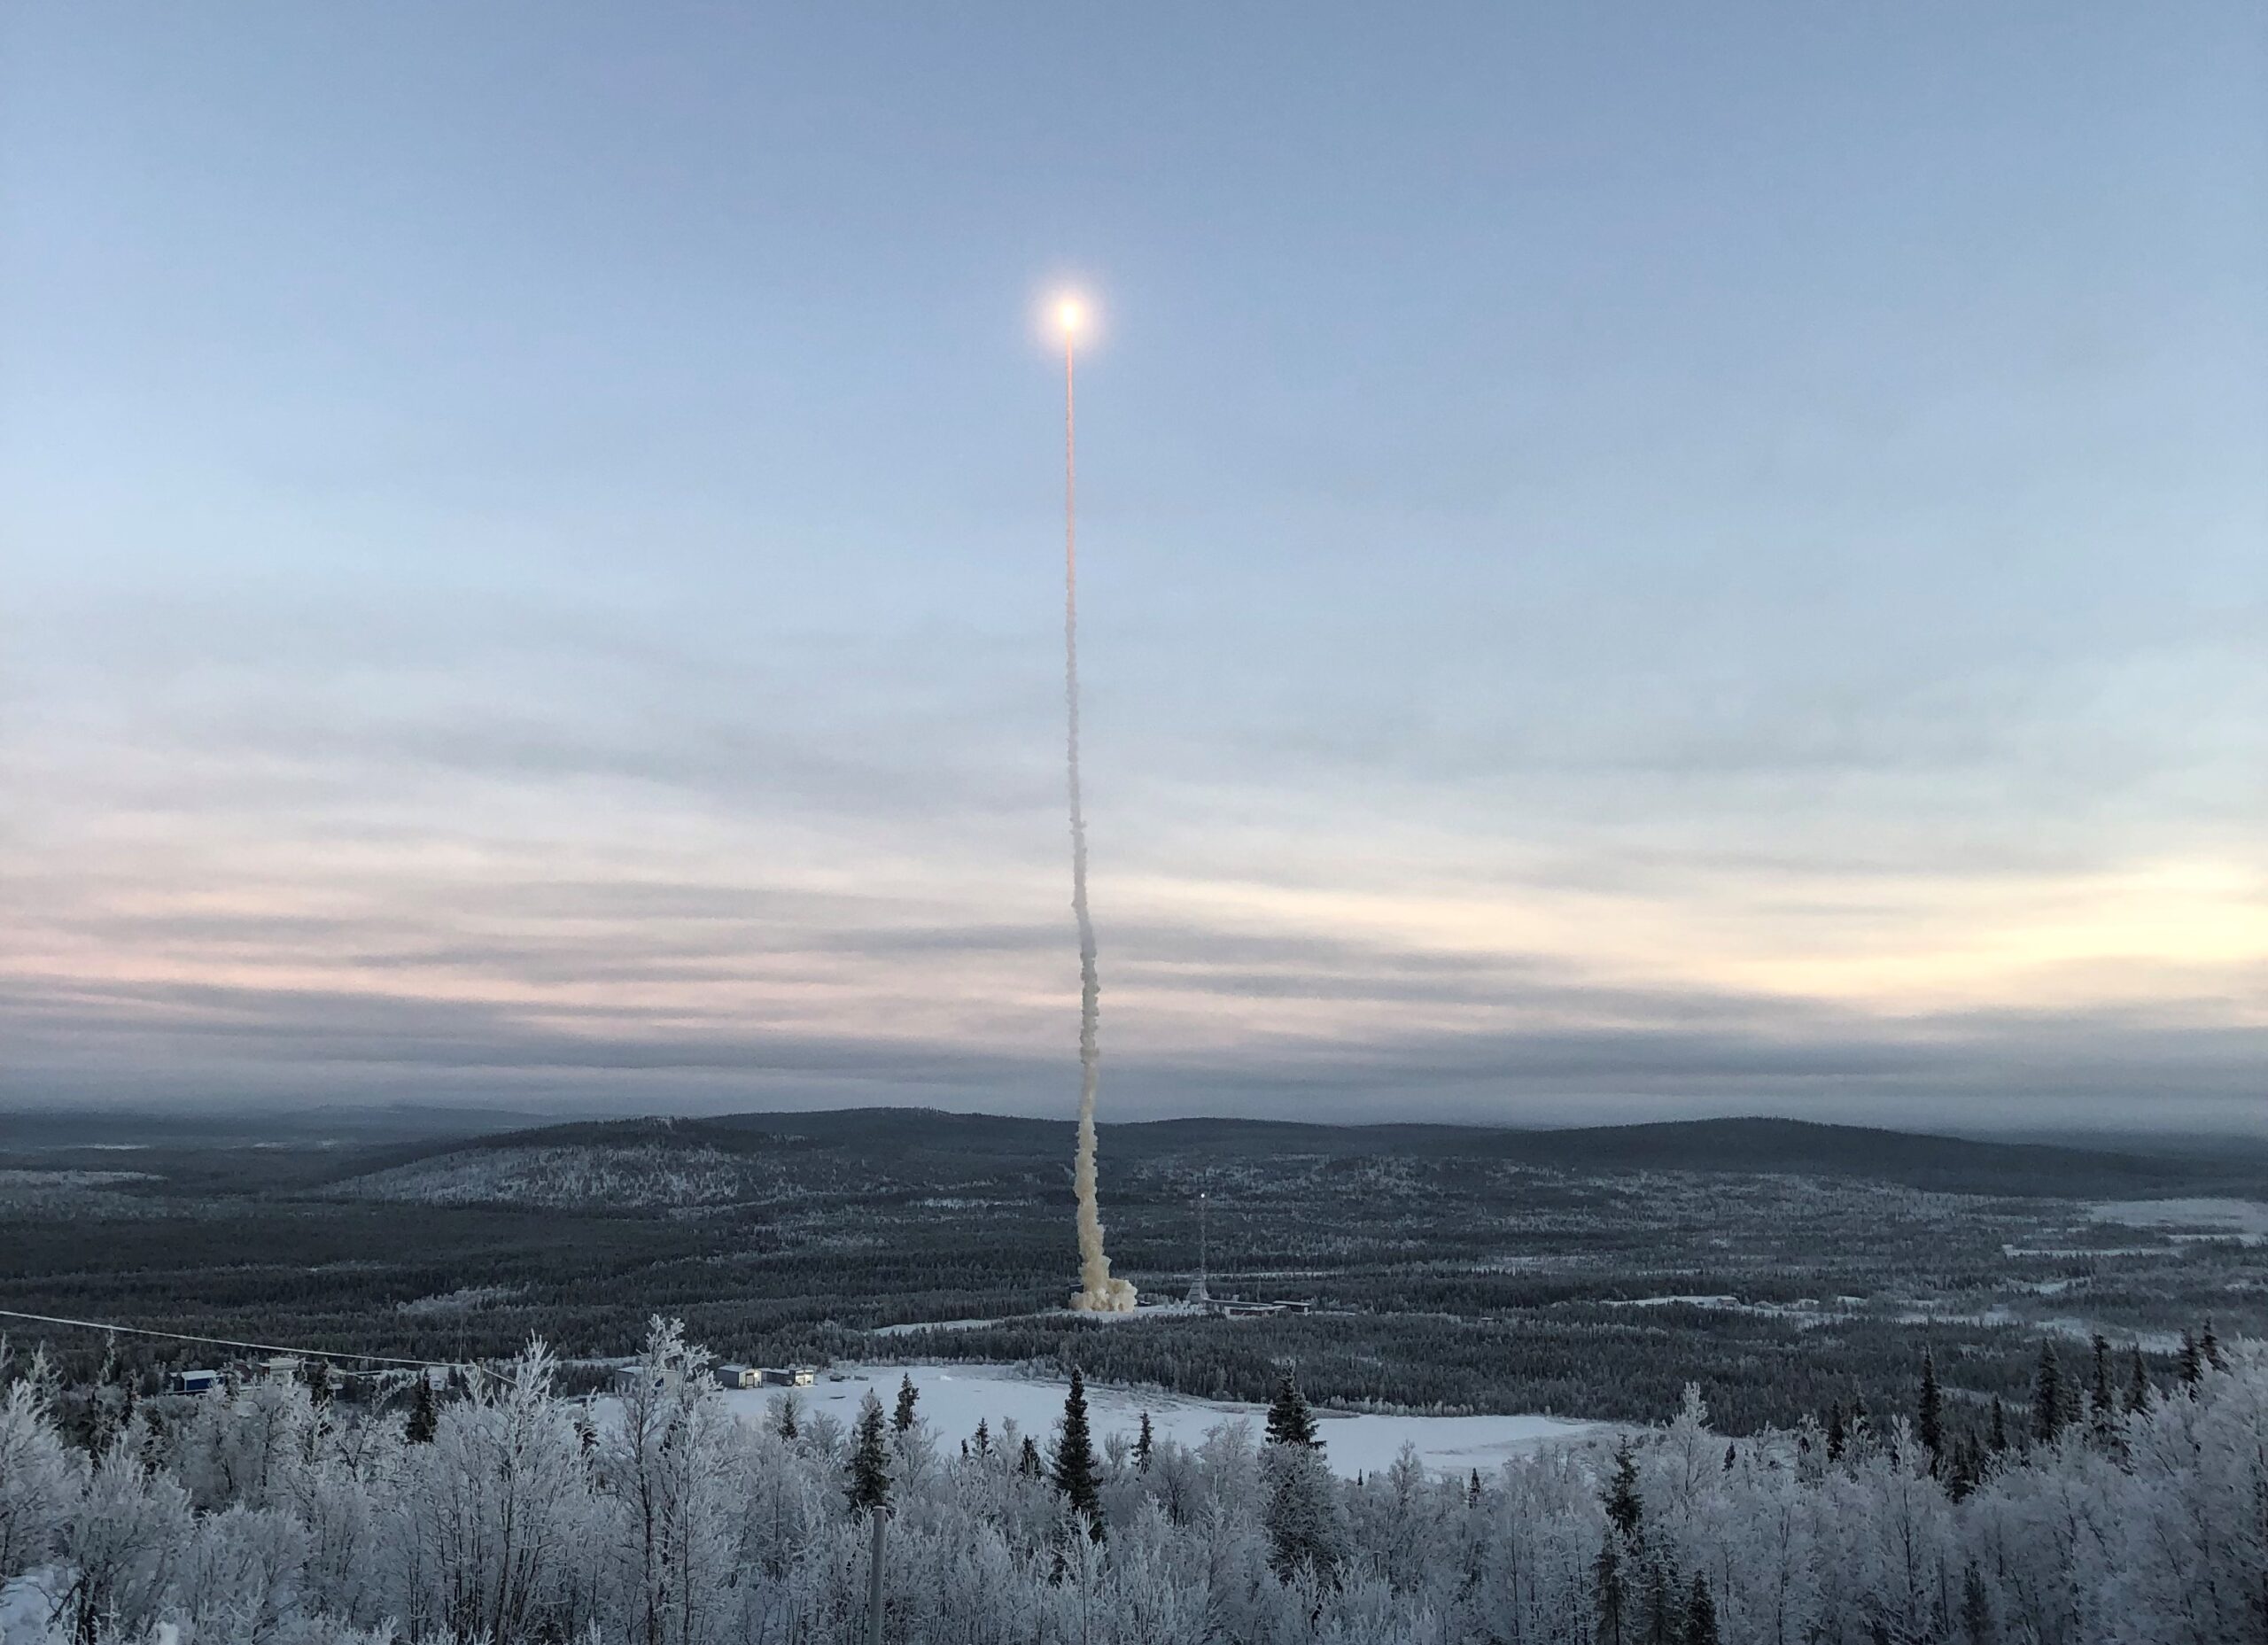 Σουηδία: Ερευνητικός πύραυλος έπεσε λόγω βλάβης στο έδαφος της Νορβηγίας